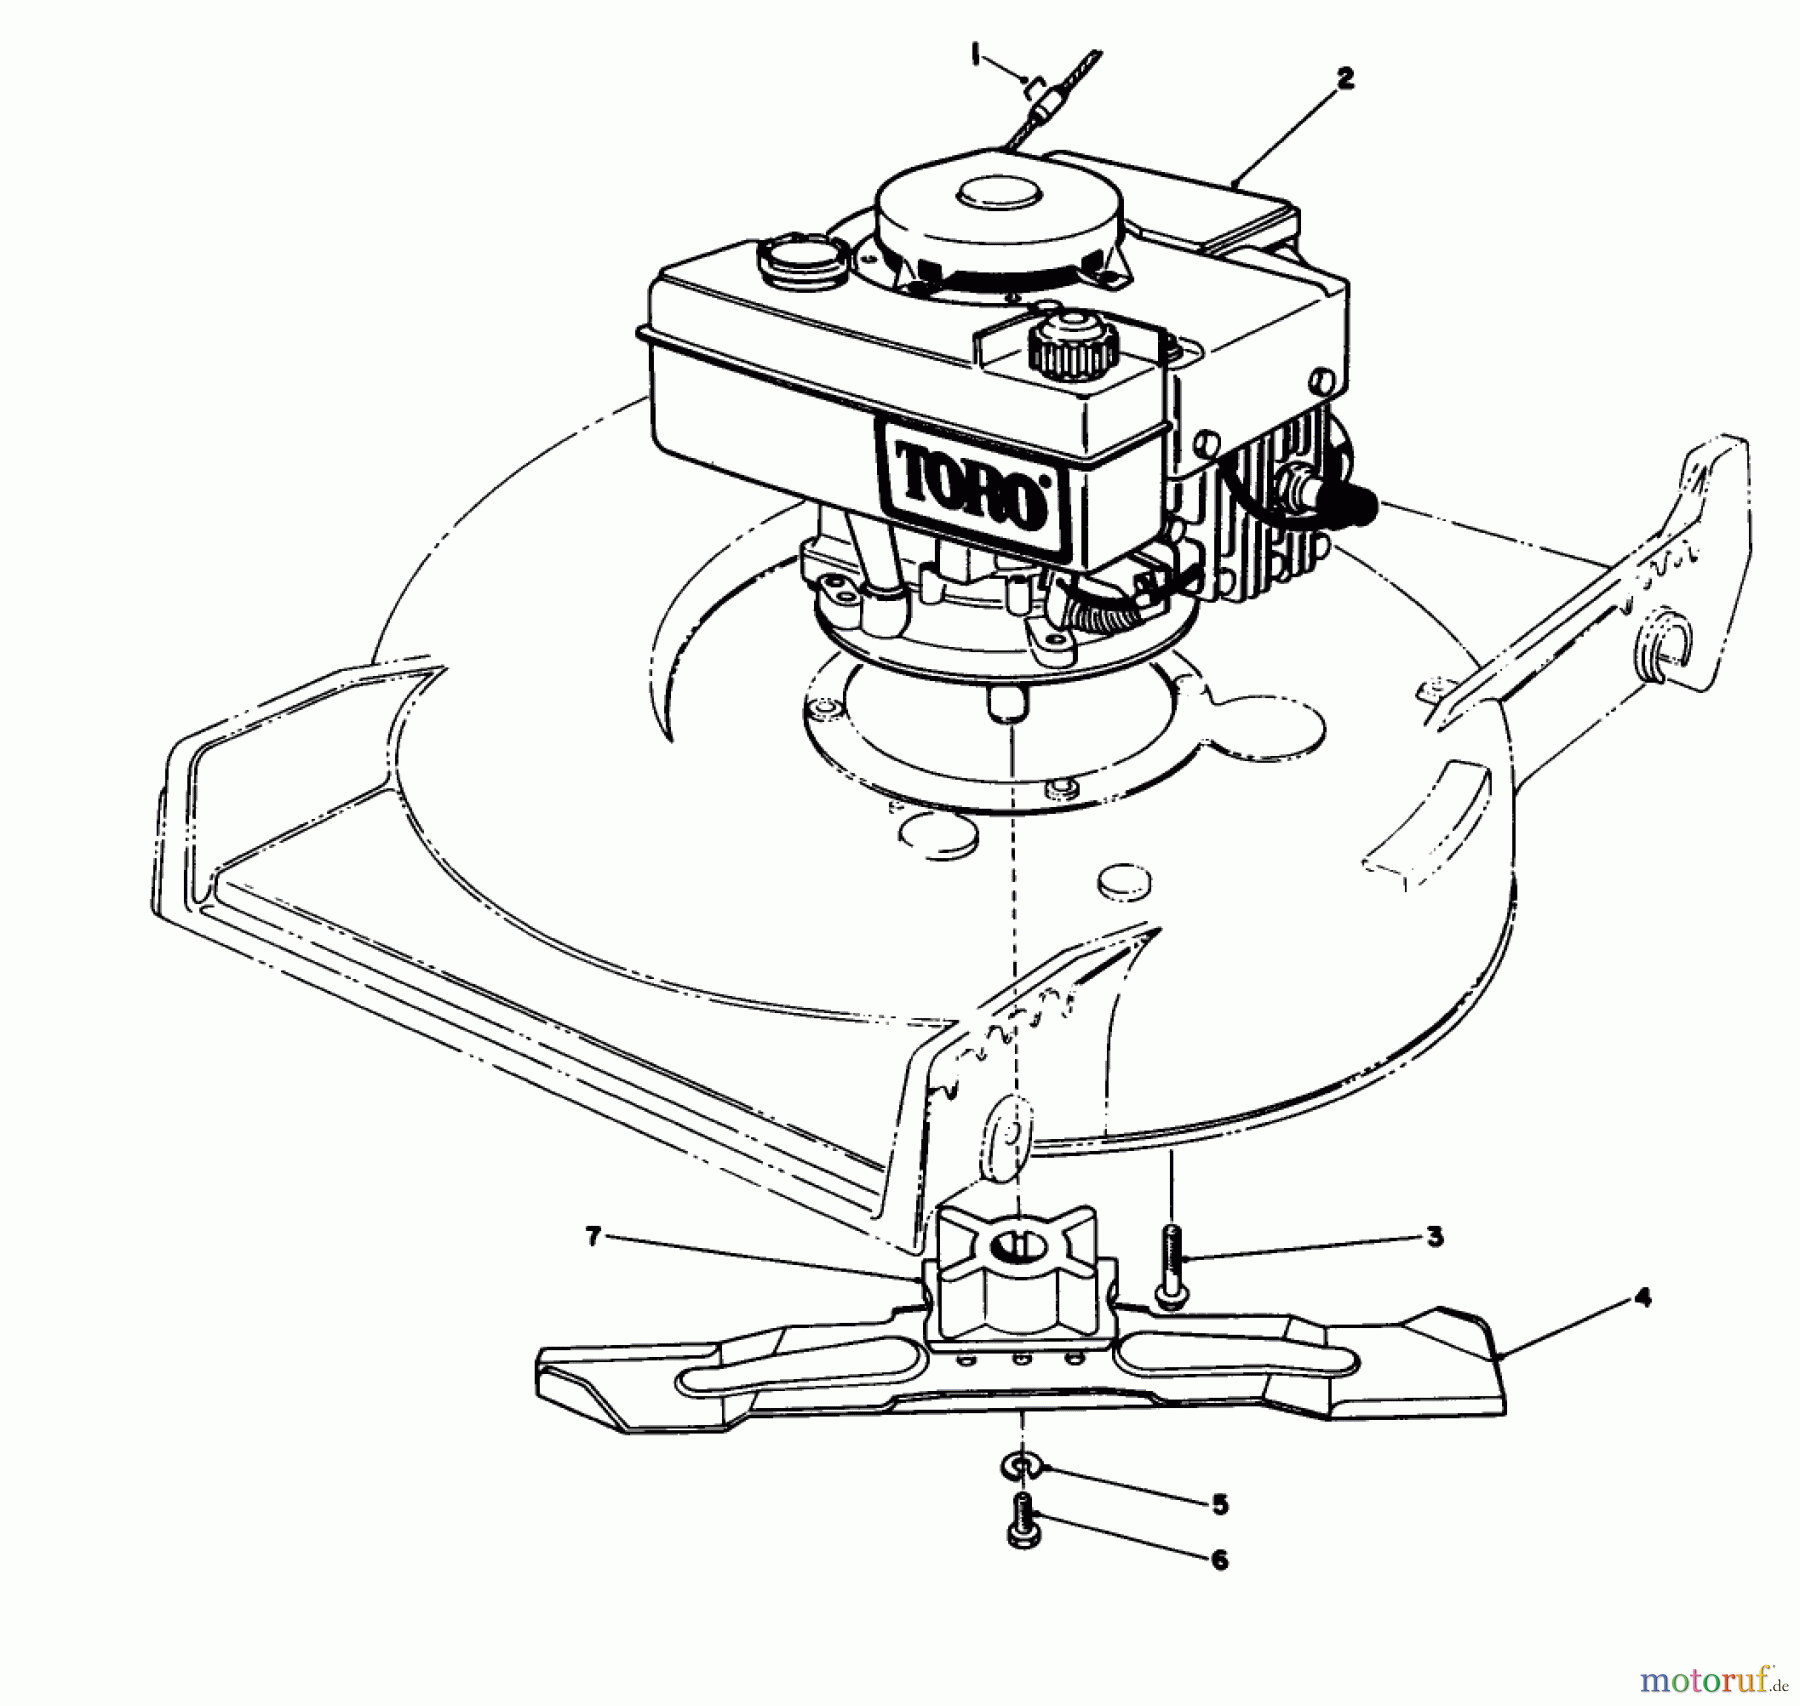  Toro Neu Mowers, Walk-Behind Seite 1 20588C - Toro Lawnmower, 1988 (8000001-8999999) ENGINE ASSEMBLY